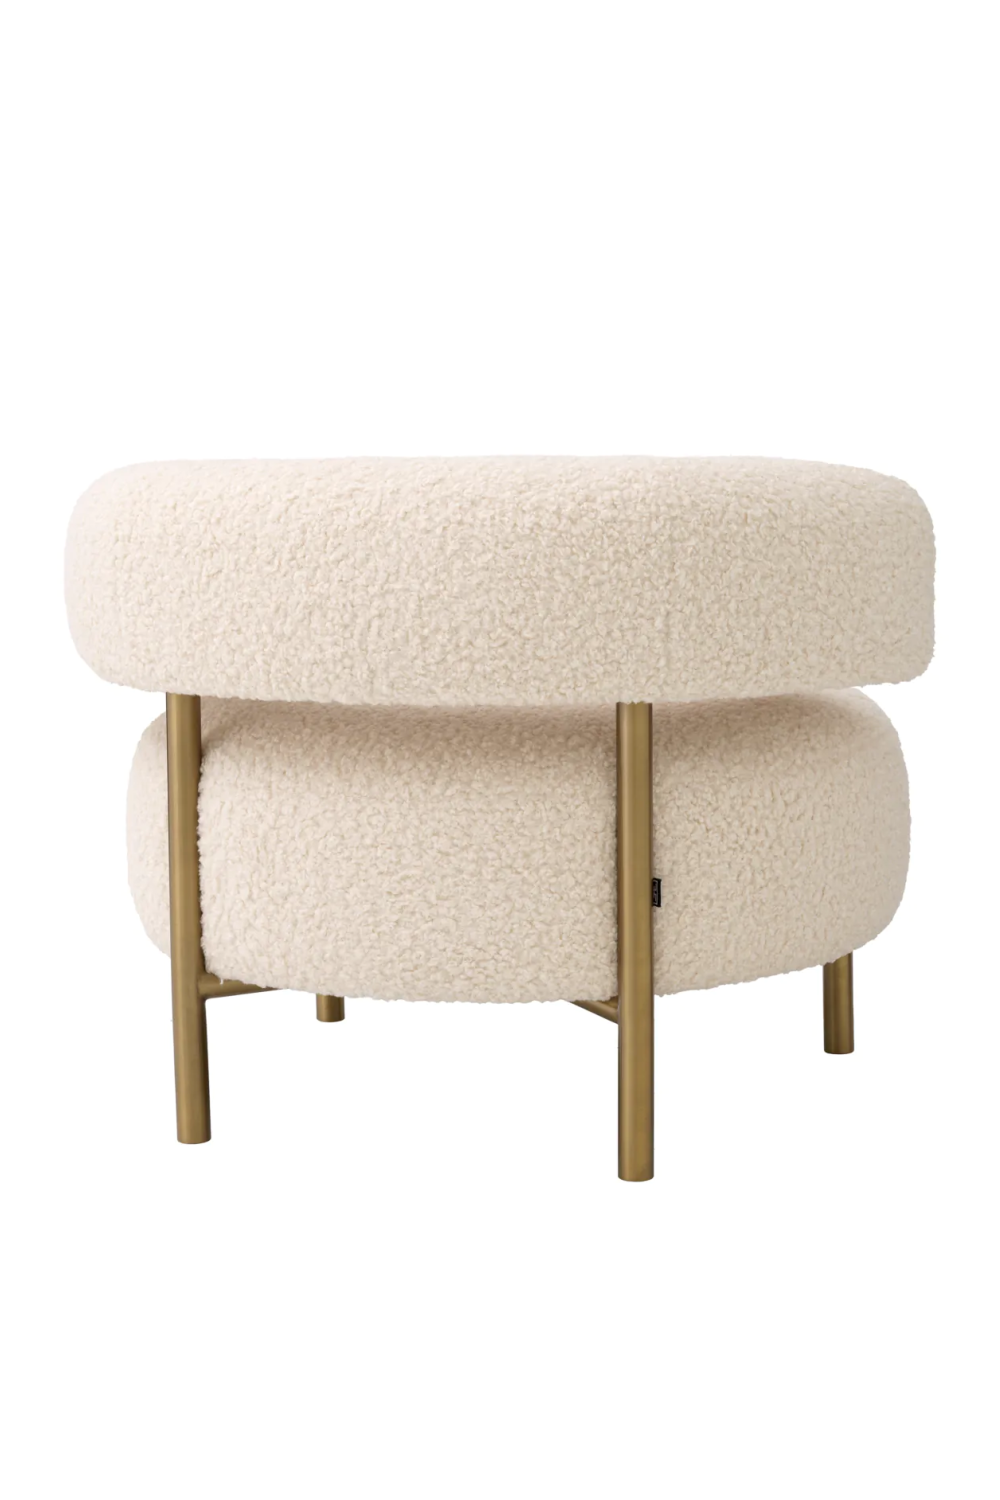 Curved Modern Lounge Chair | Eichholtz Thompson | Oroa.com